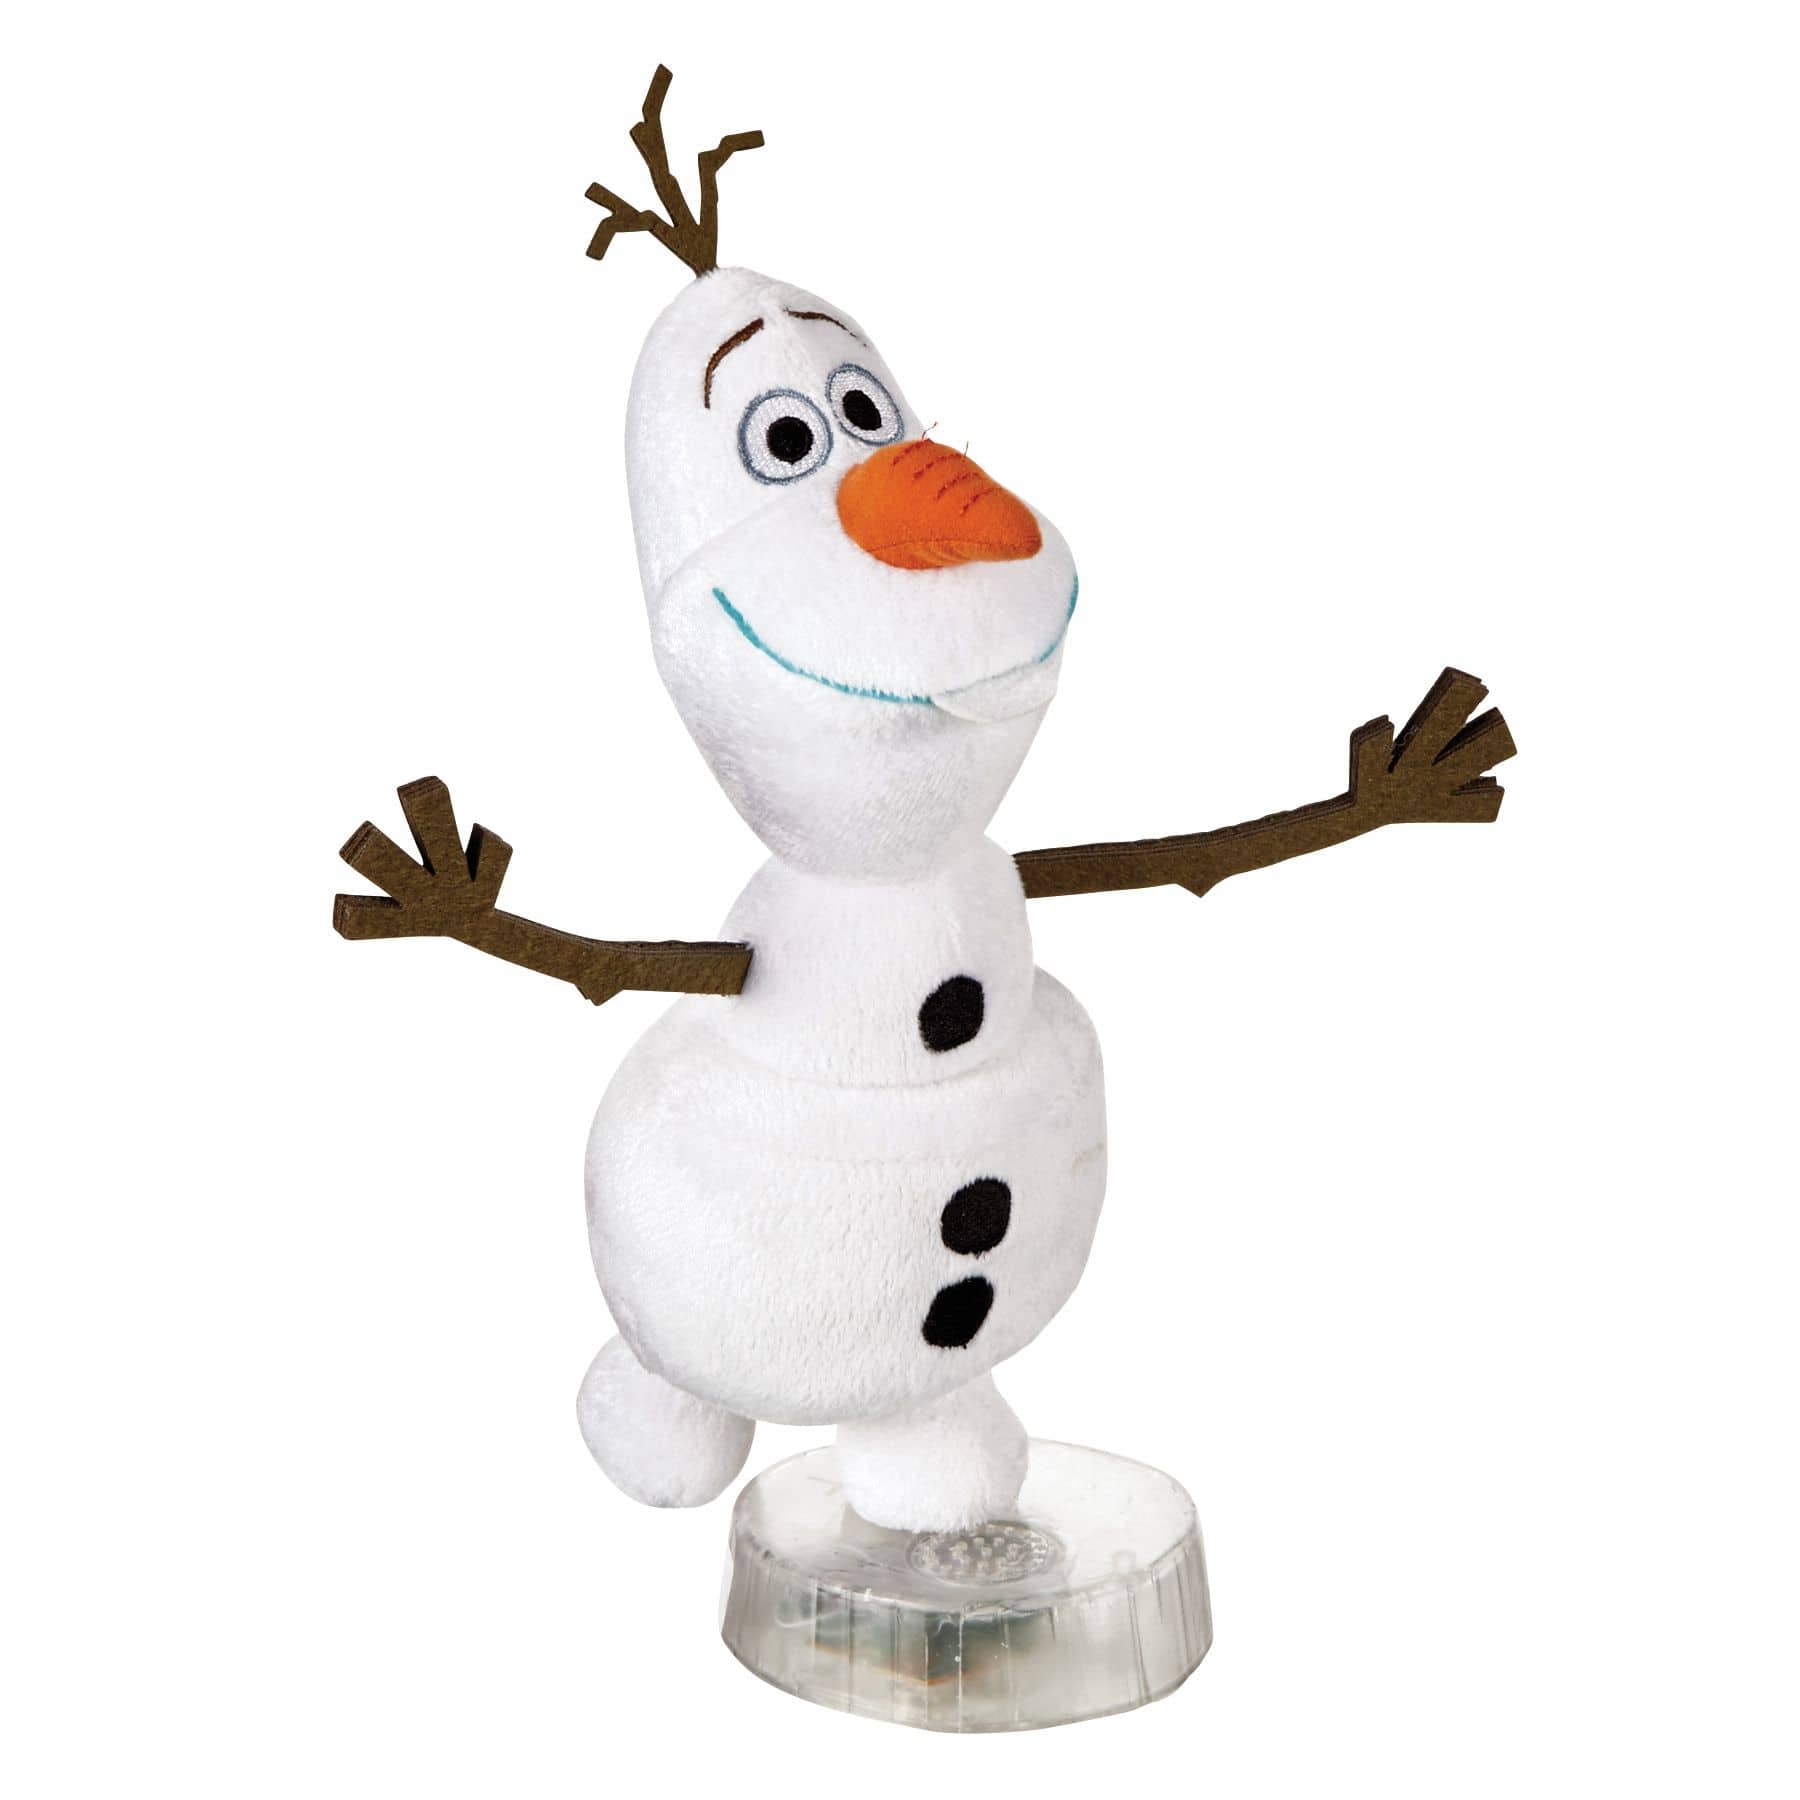 La Reine des neiges - Peluche électronique Olaf 30 cm - Figurine